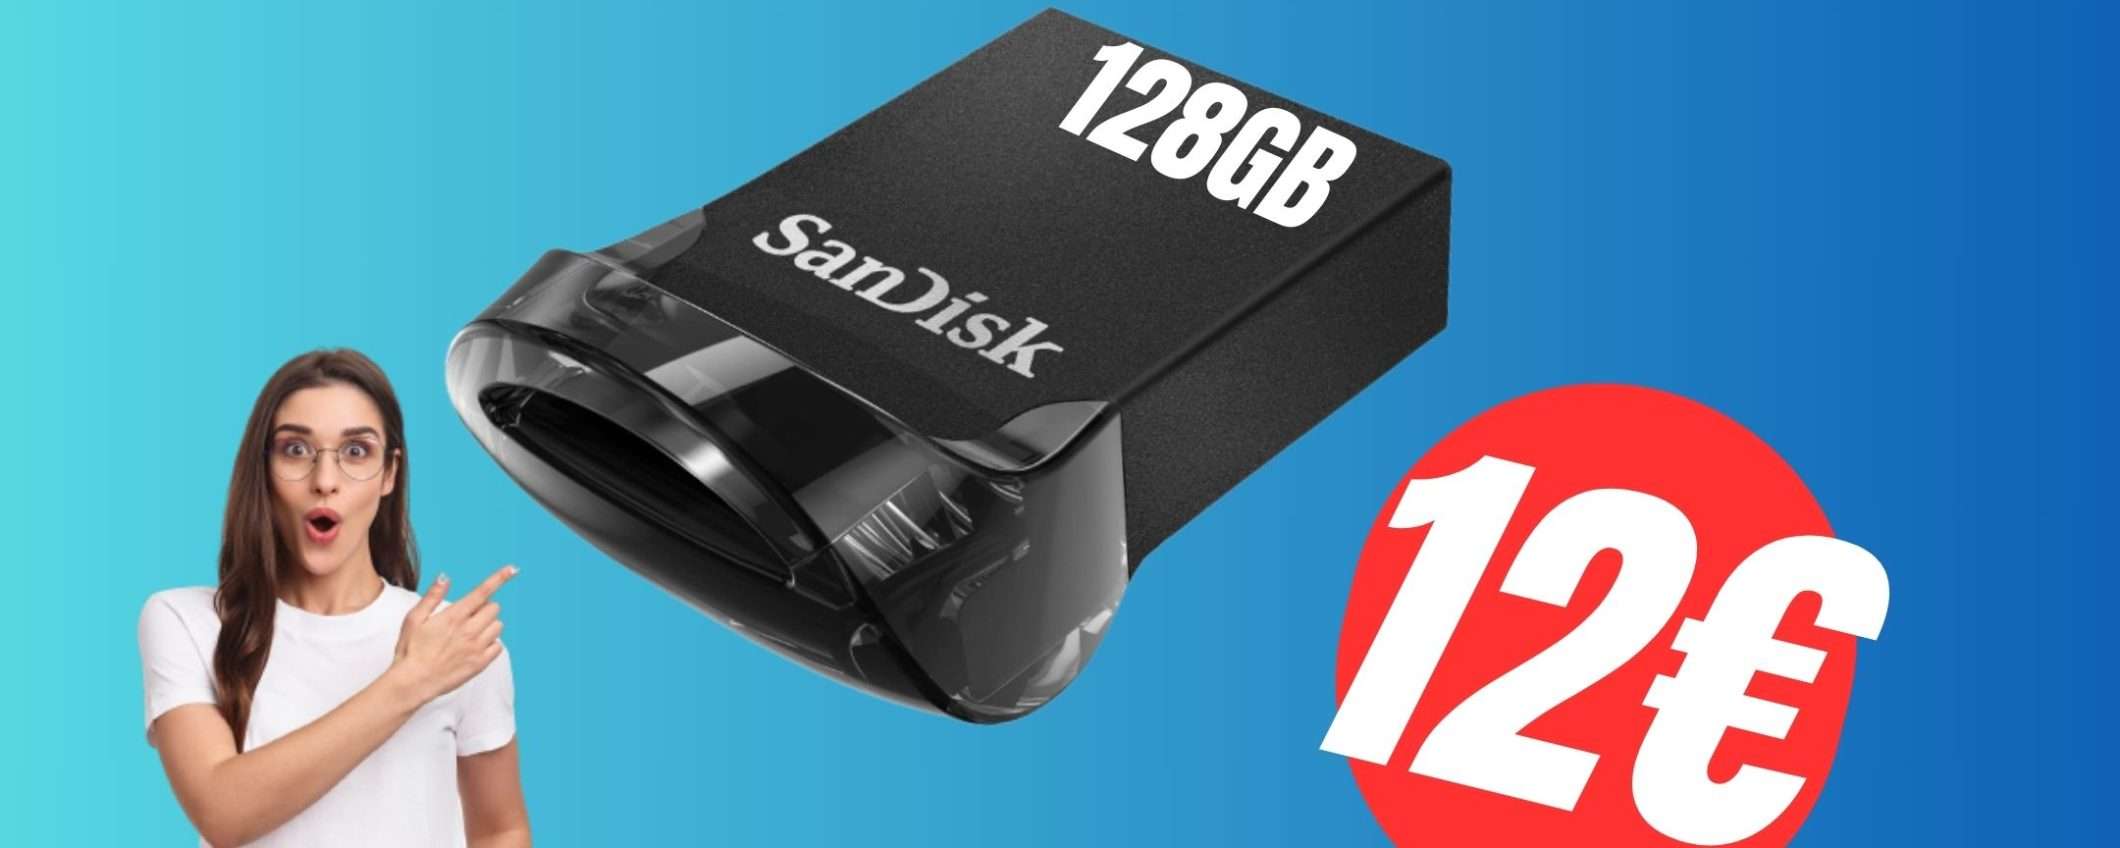 La Mini Chiavetta USB di Sandisk da 128GB a un PREZZO STREPITOSO (12€)